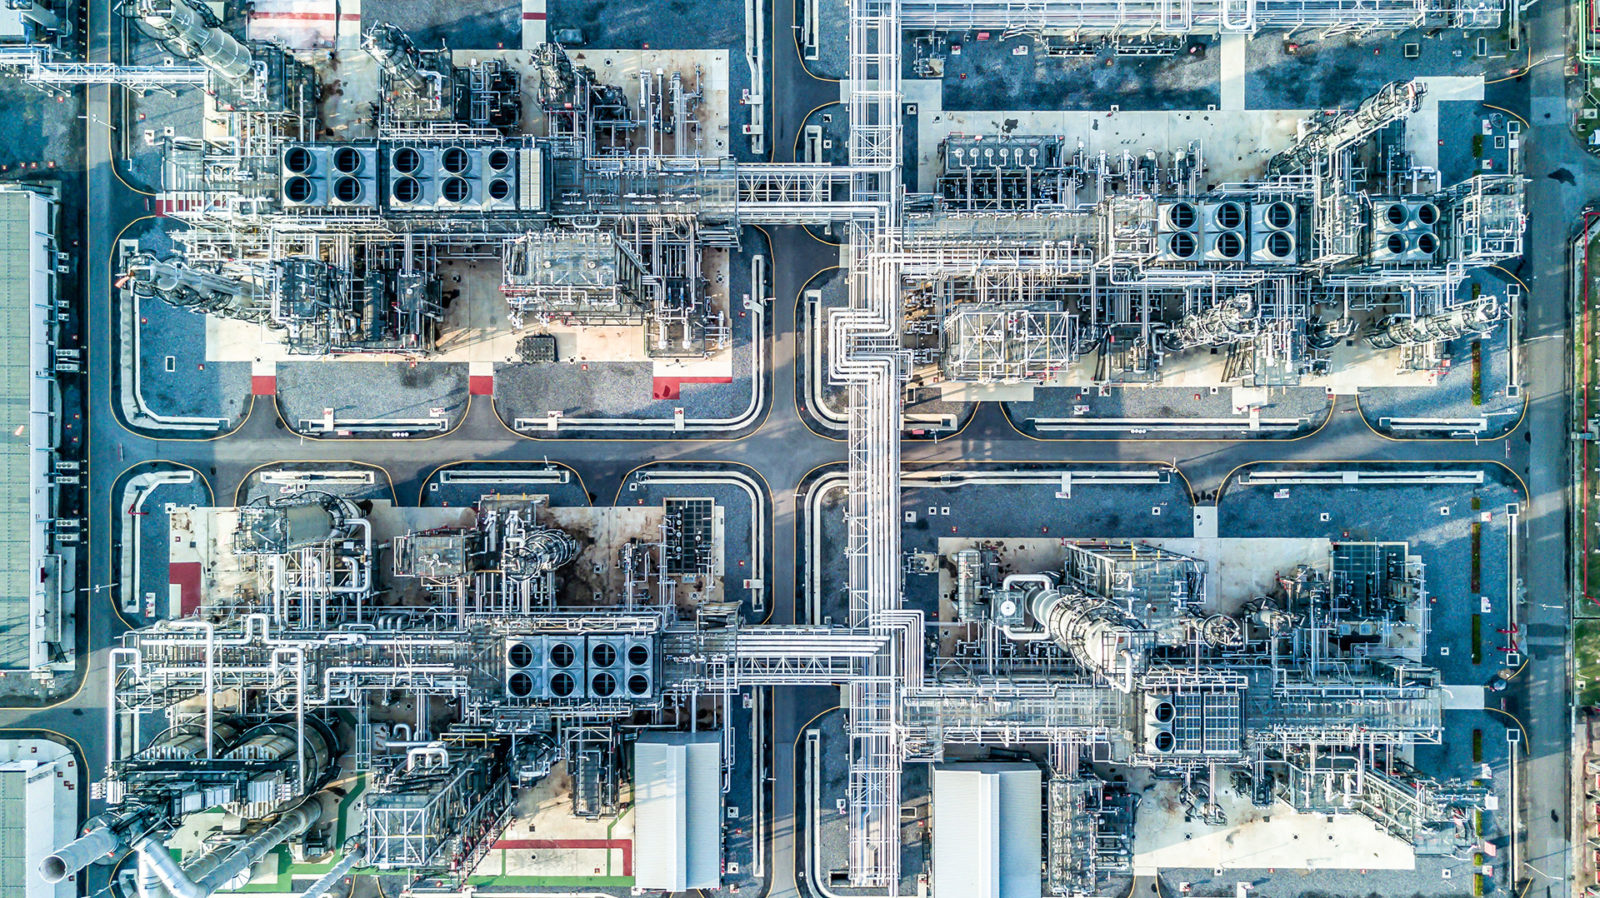 Vista aérea de una refinería de petróleo